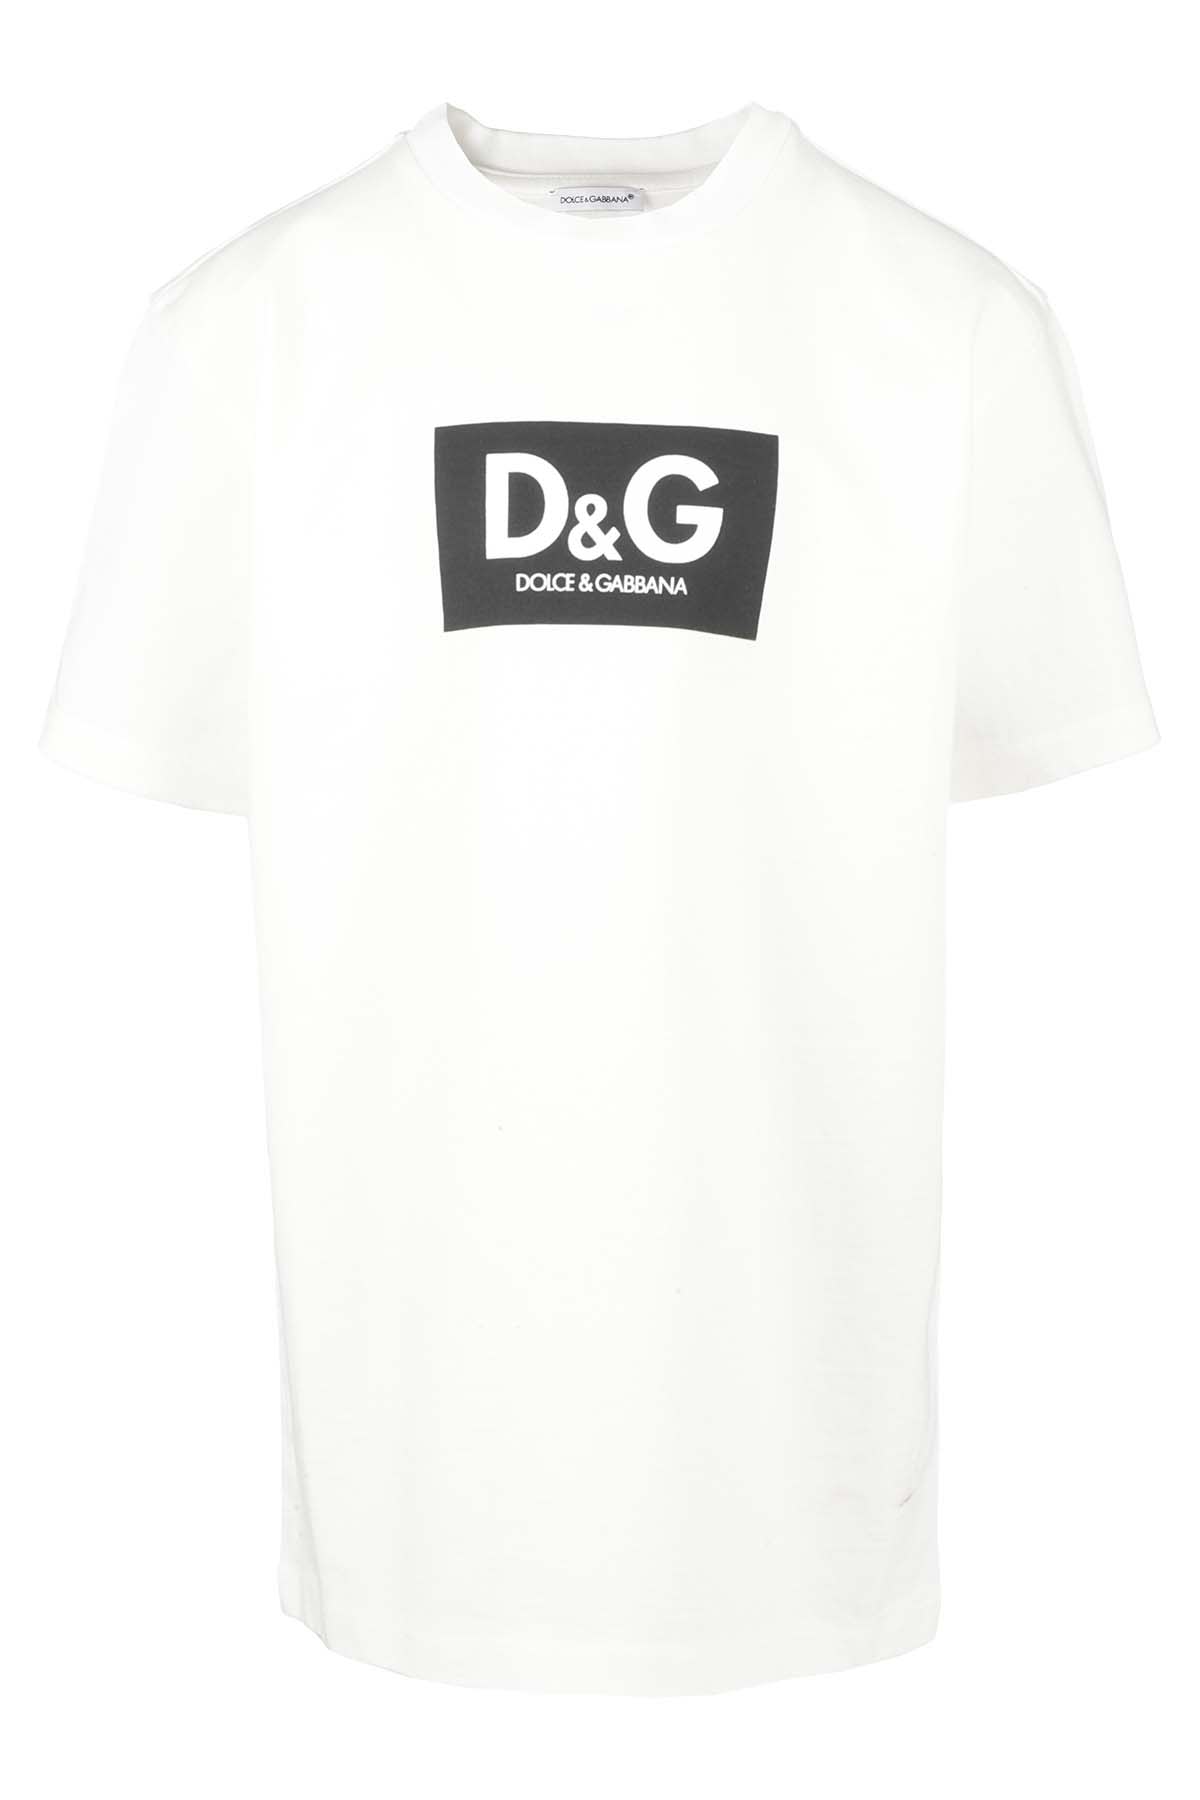 Dolce & Gabbana Tshirt